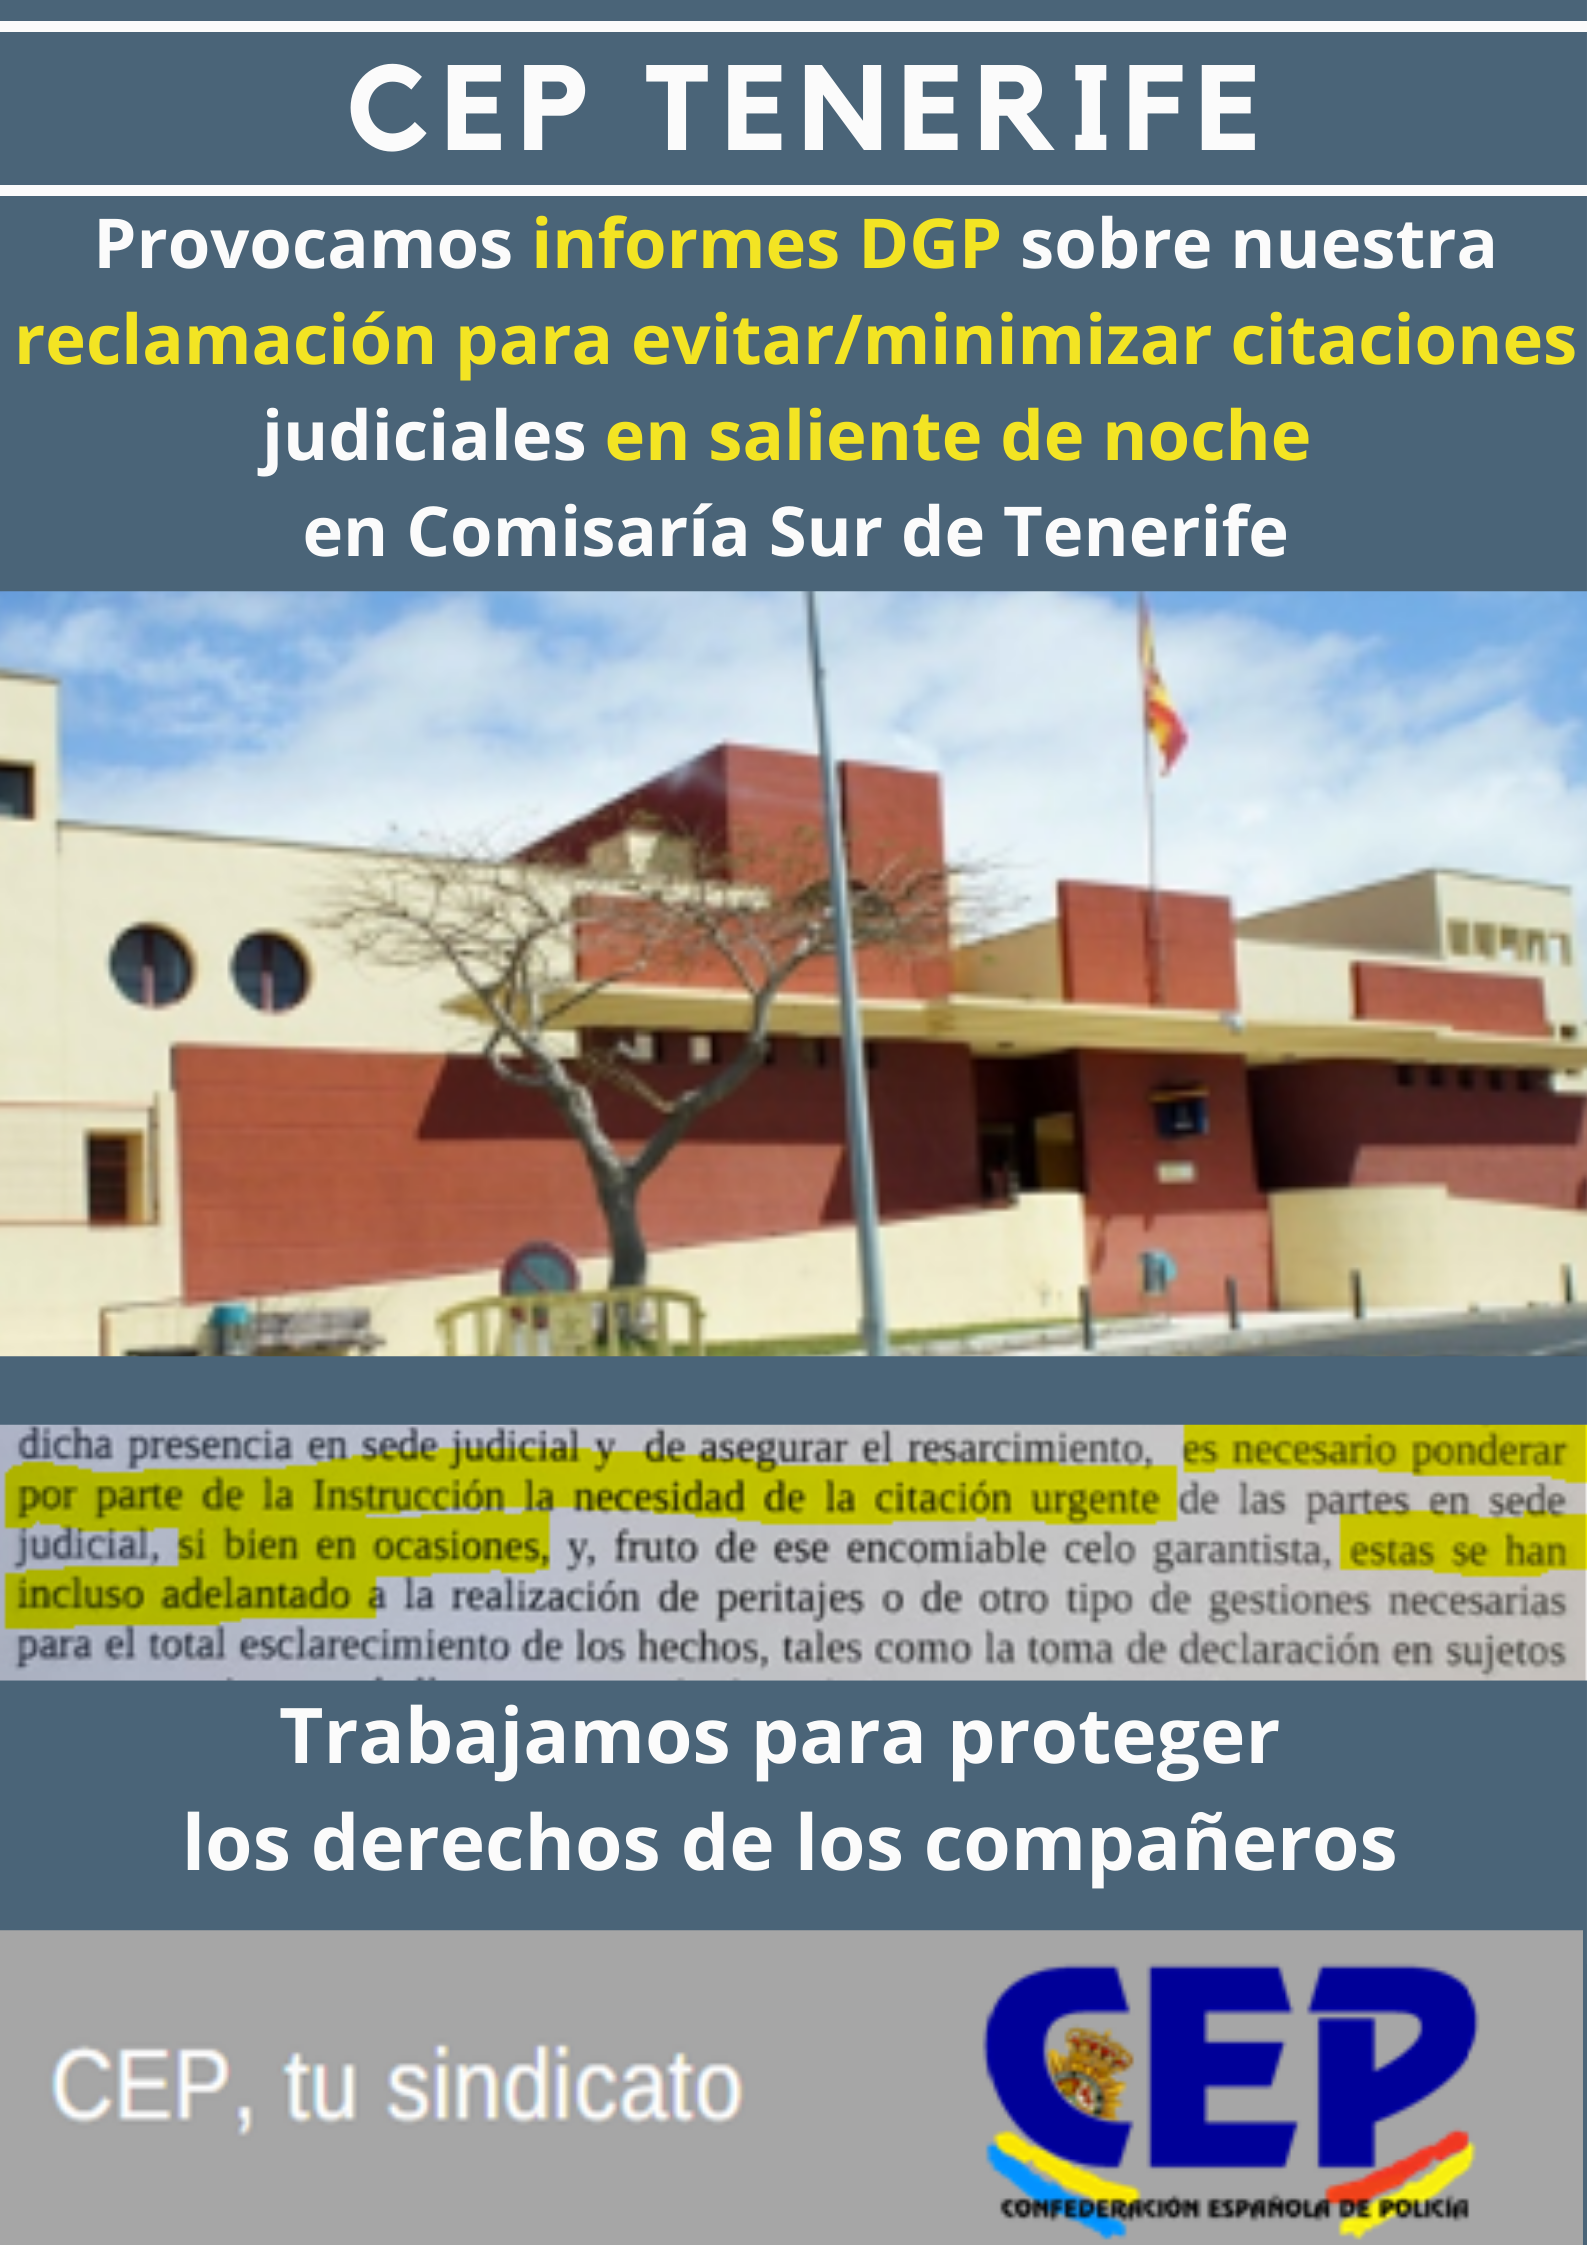 Provocamos informes DGP sobre minimizar citaciones judiciales en saliente noche radiopatrullas Sur de Tenerife